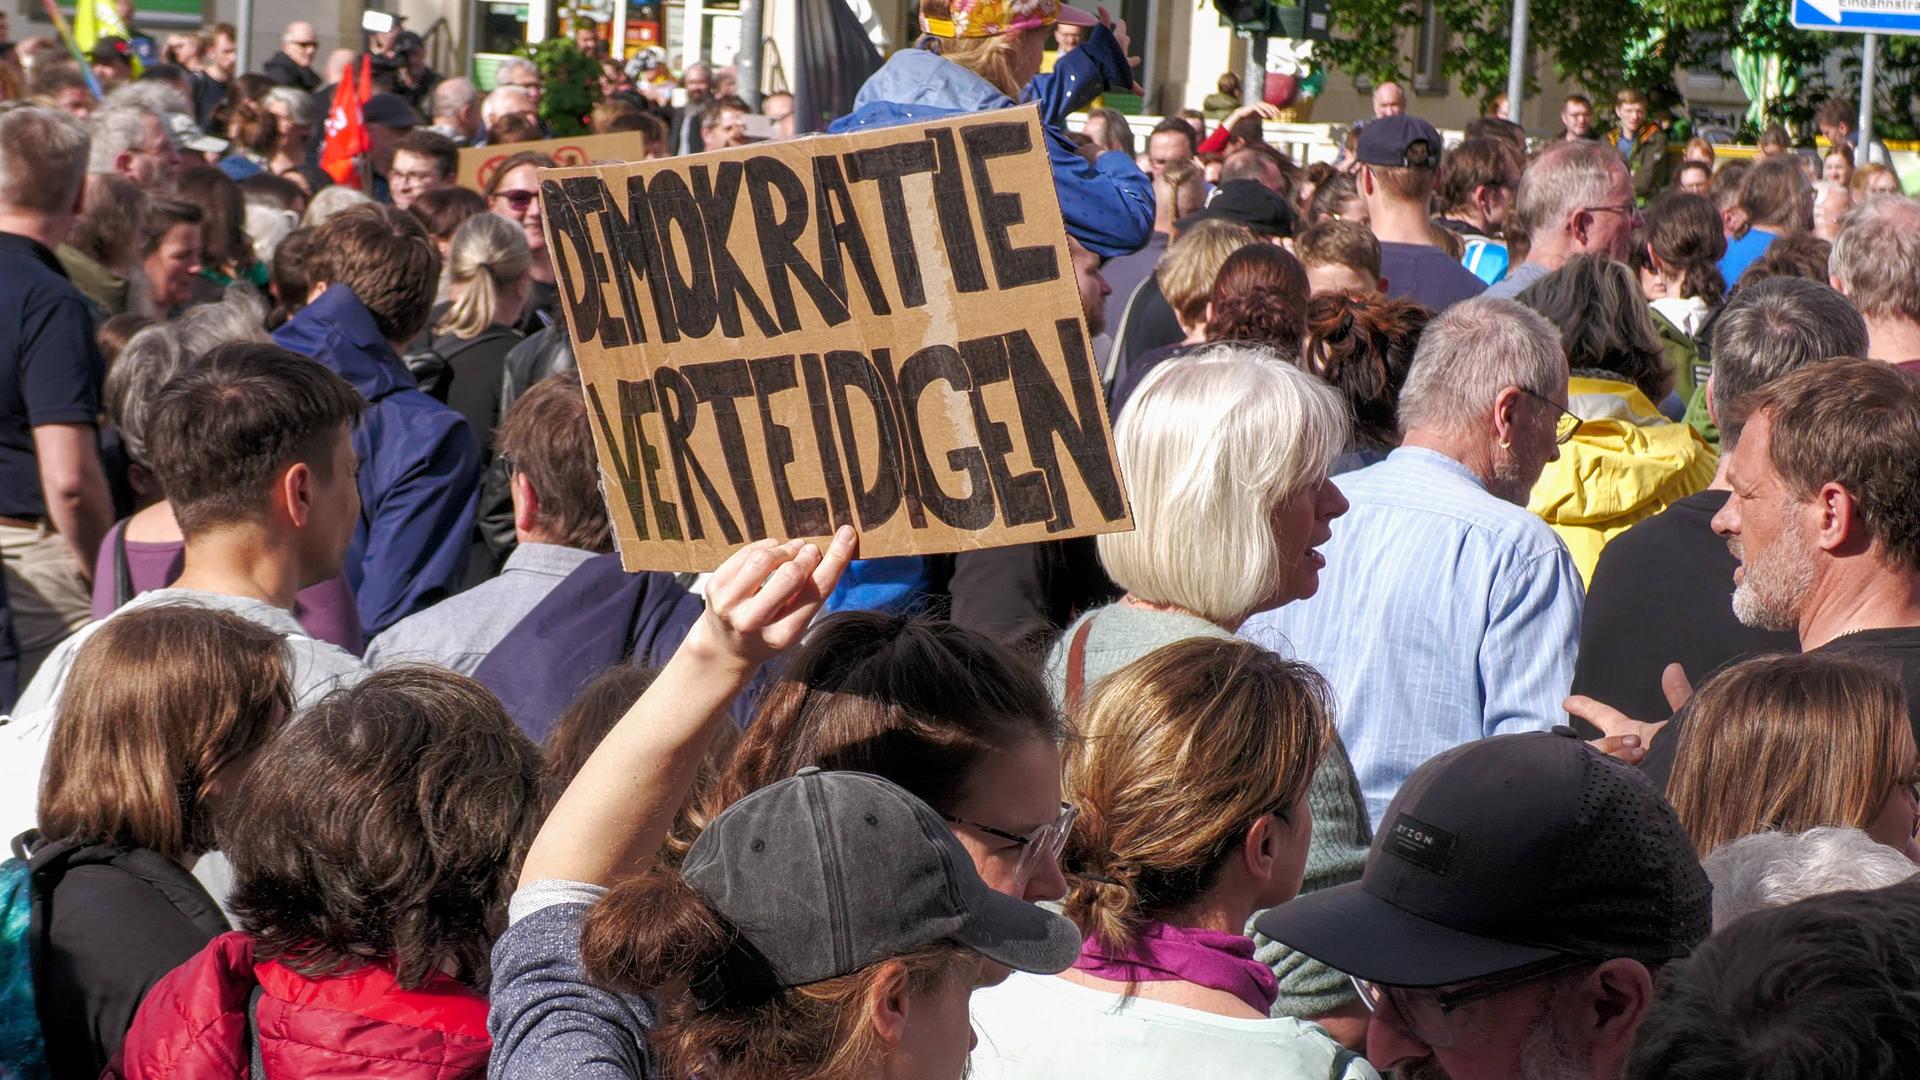 Nach dem Angriff auf den SPD-Politiker Ecke haben sich rund 2.000 Menschen zu einer Solidaritätskundgebung in Dresden versammelt. Teilnehmer halten Plakate mit der Aufschrift "Demokratie verteidigen" hoch. 